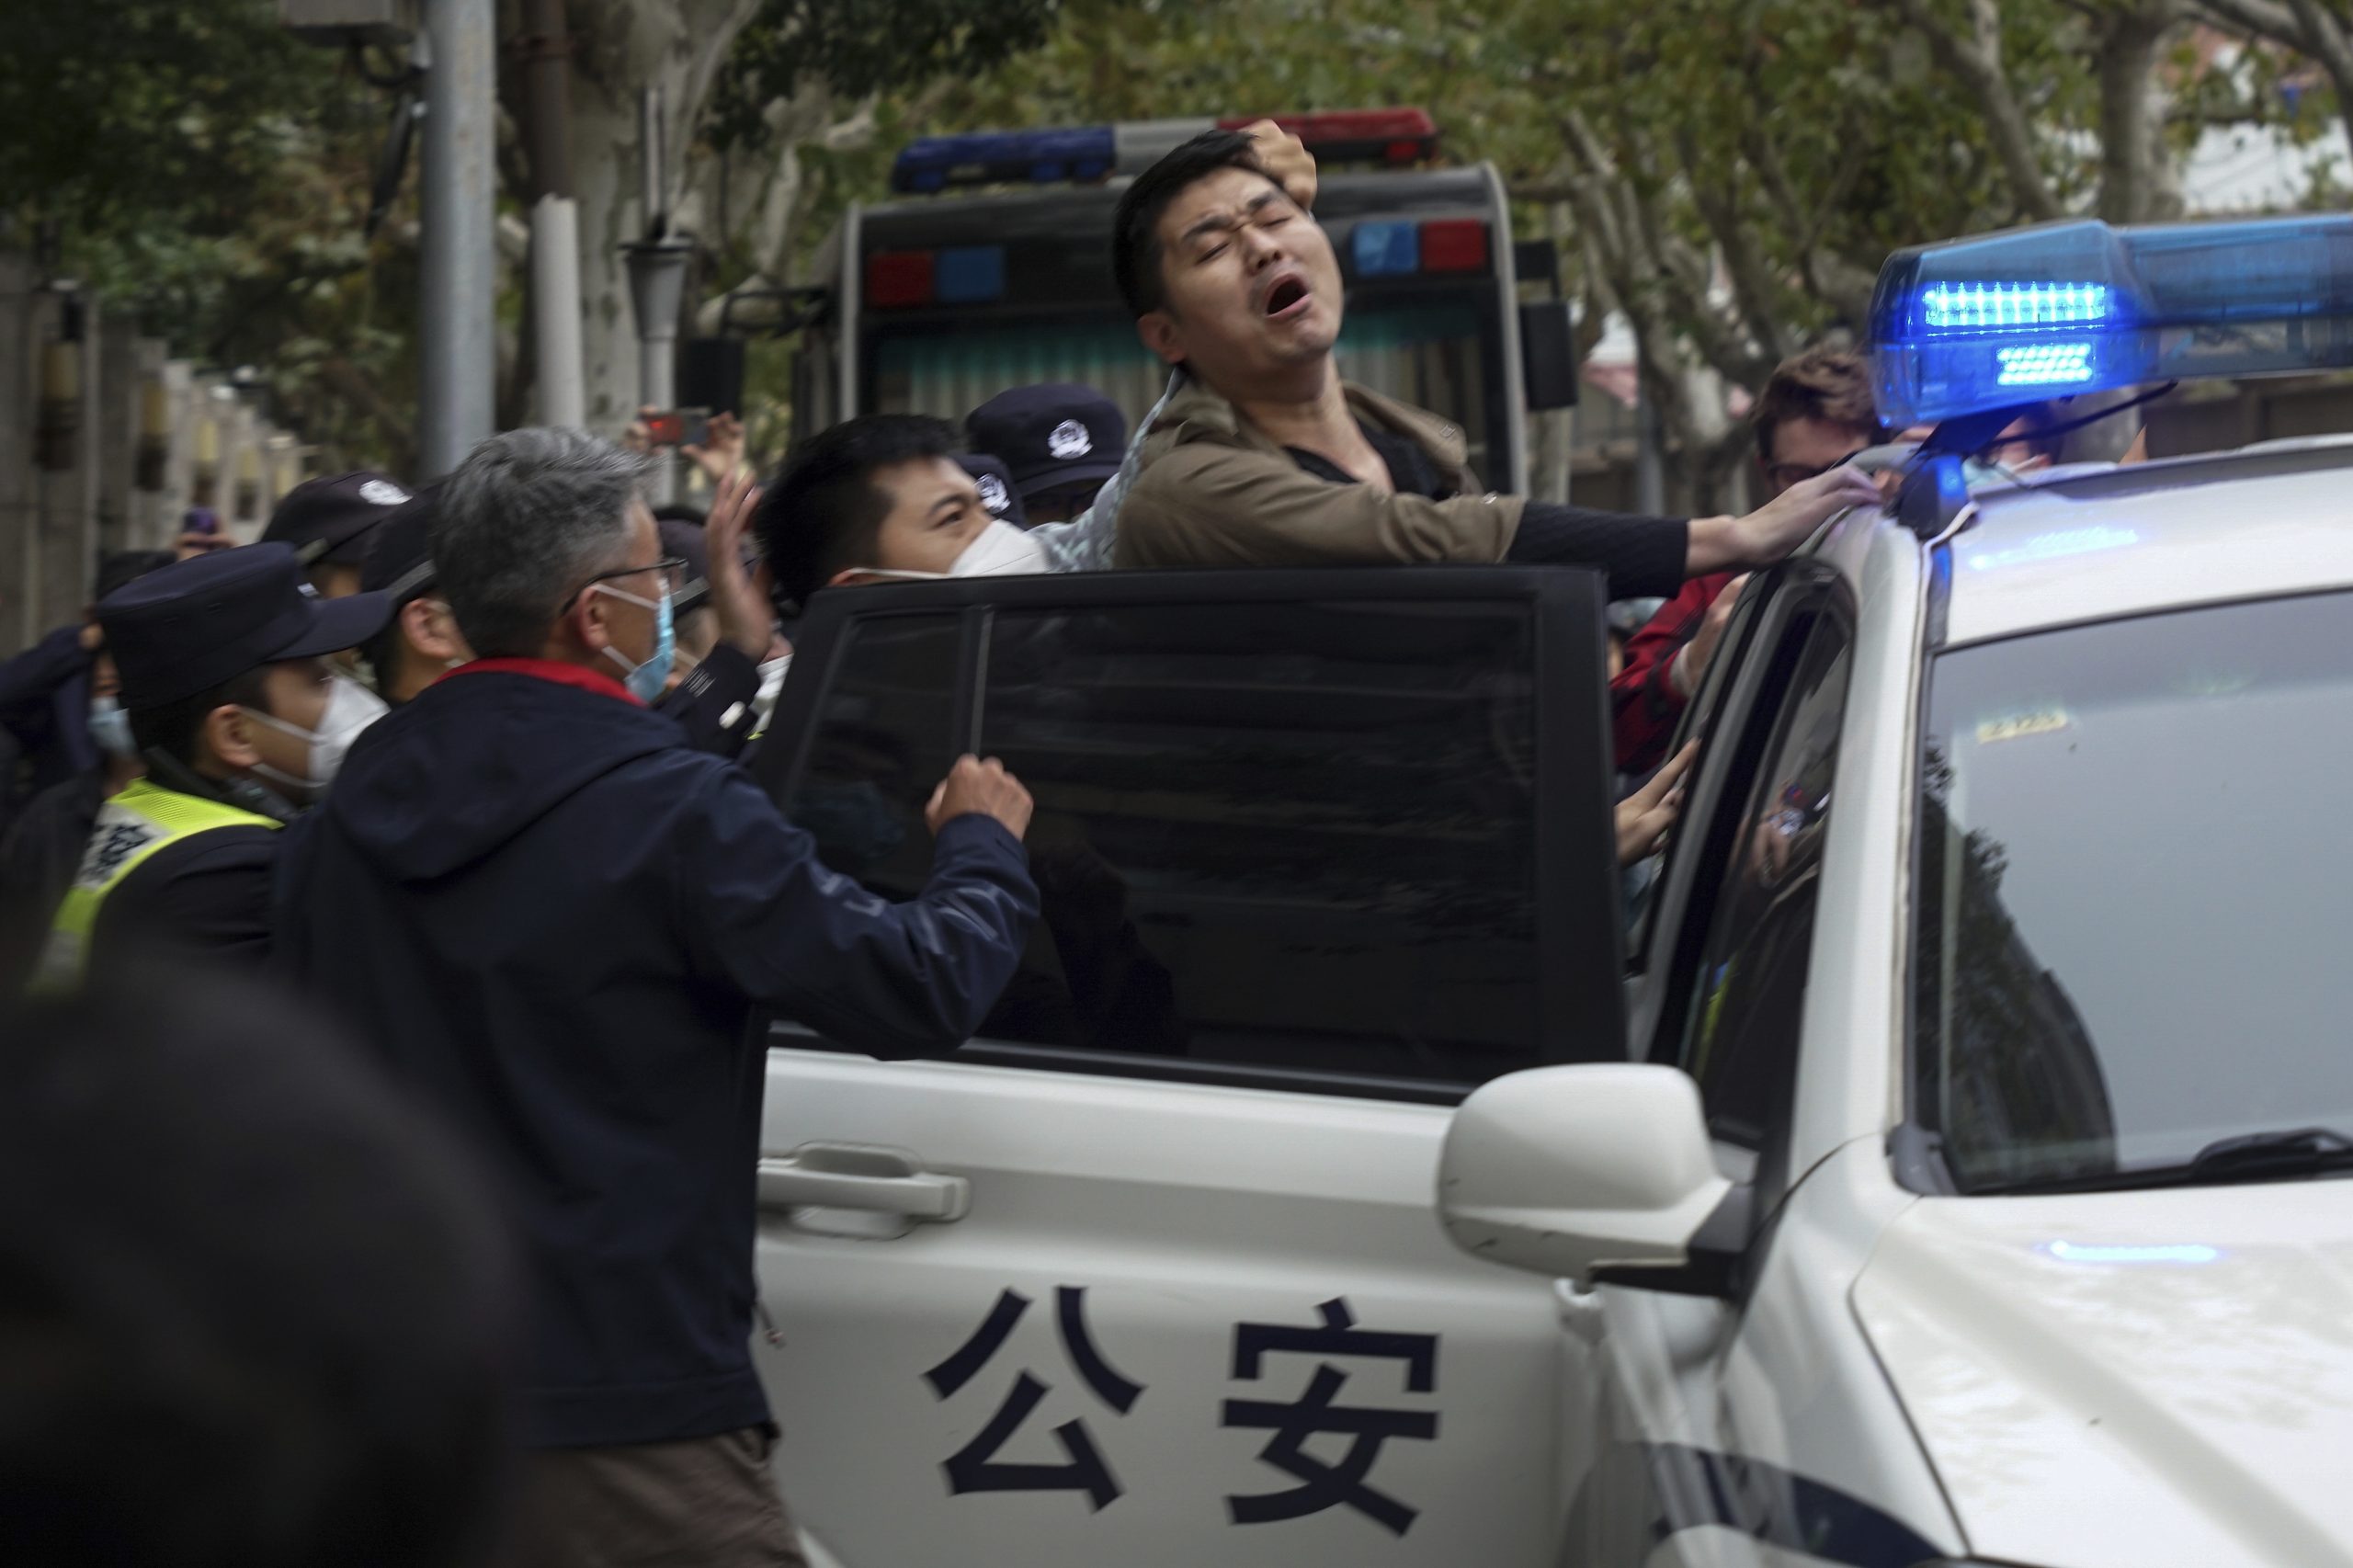 极力平息示威 中国警方用尖端科技追踪示威者